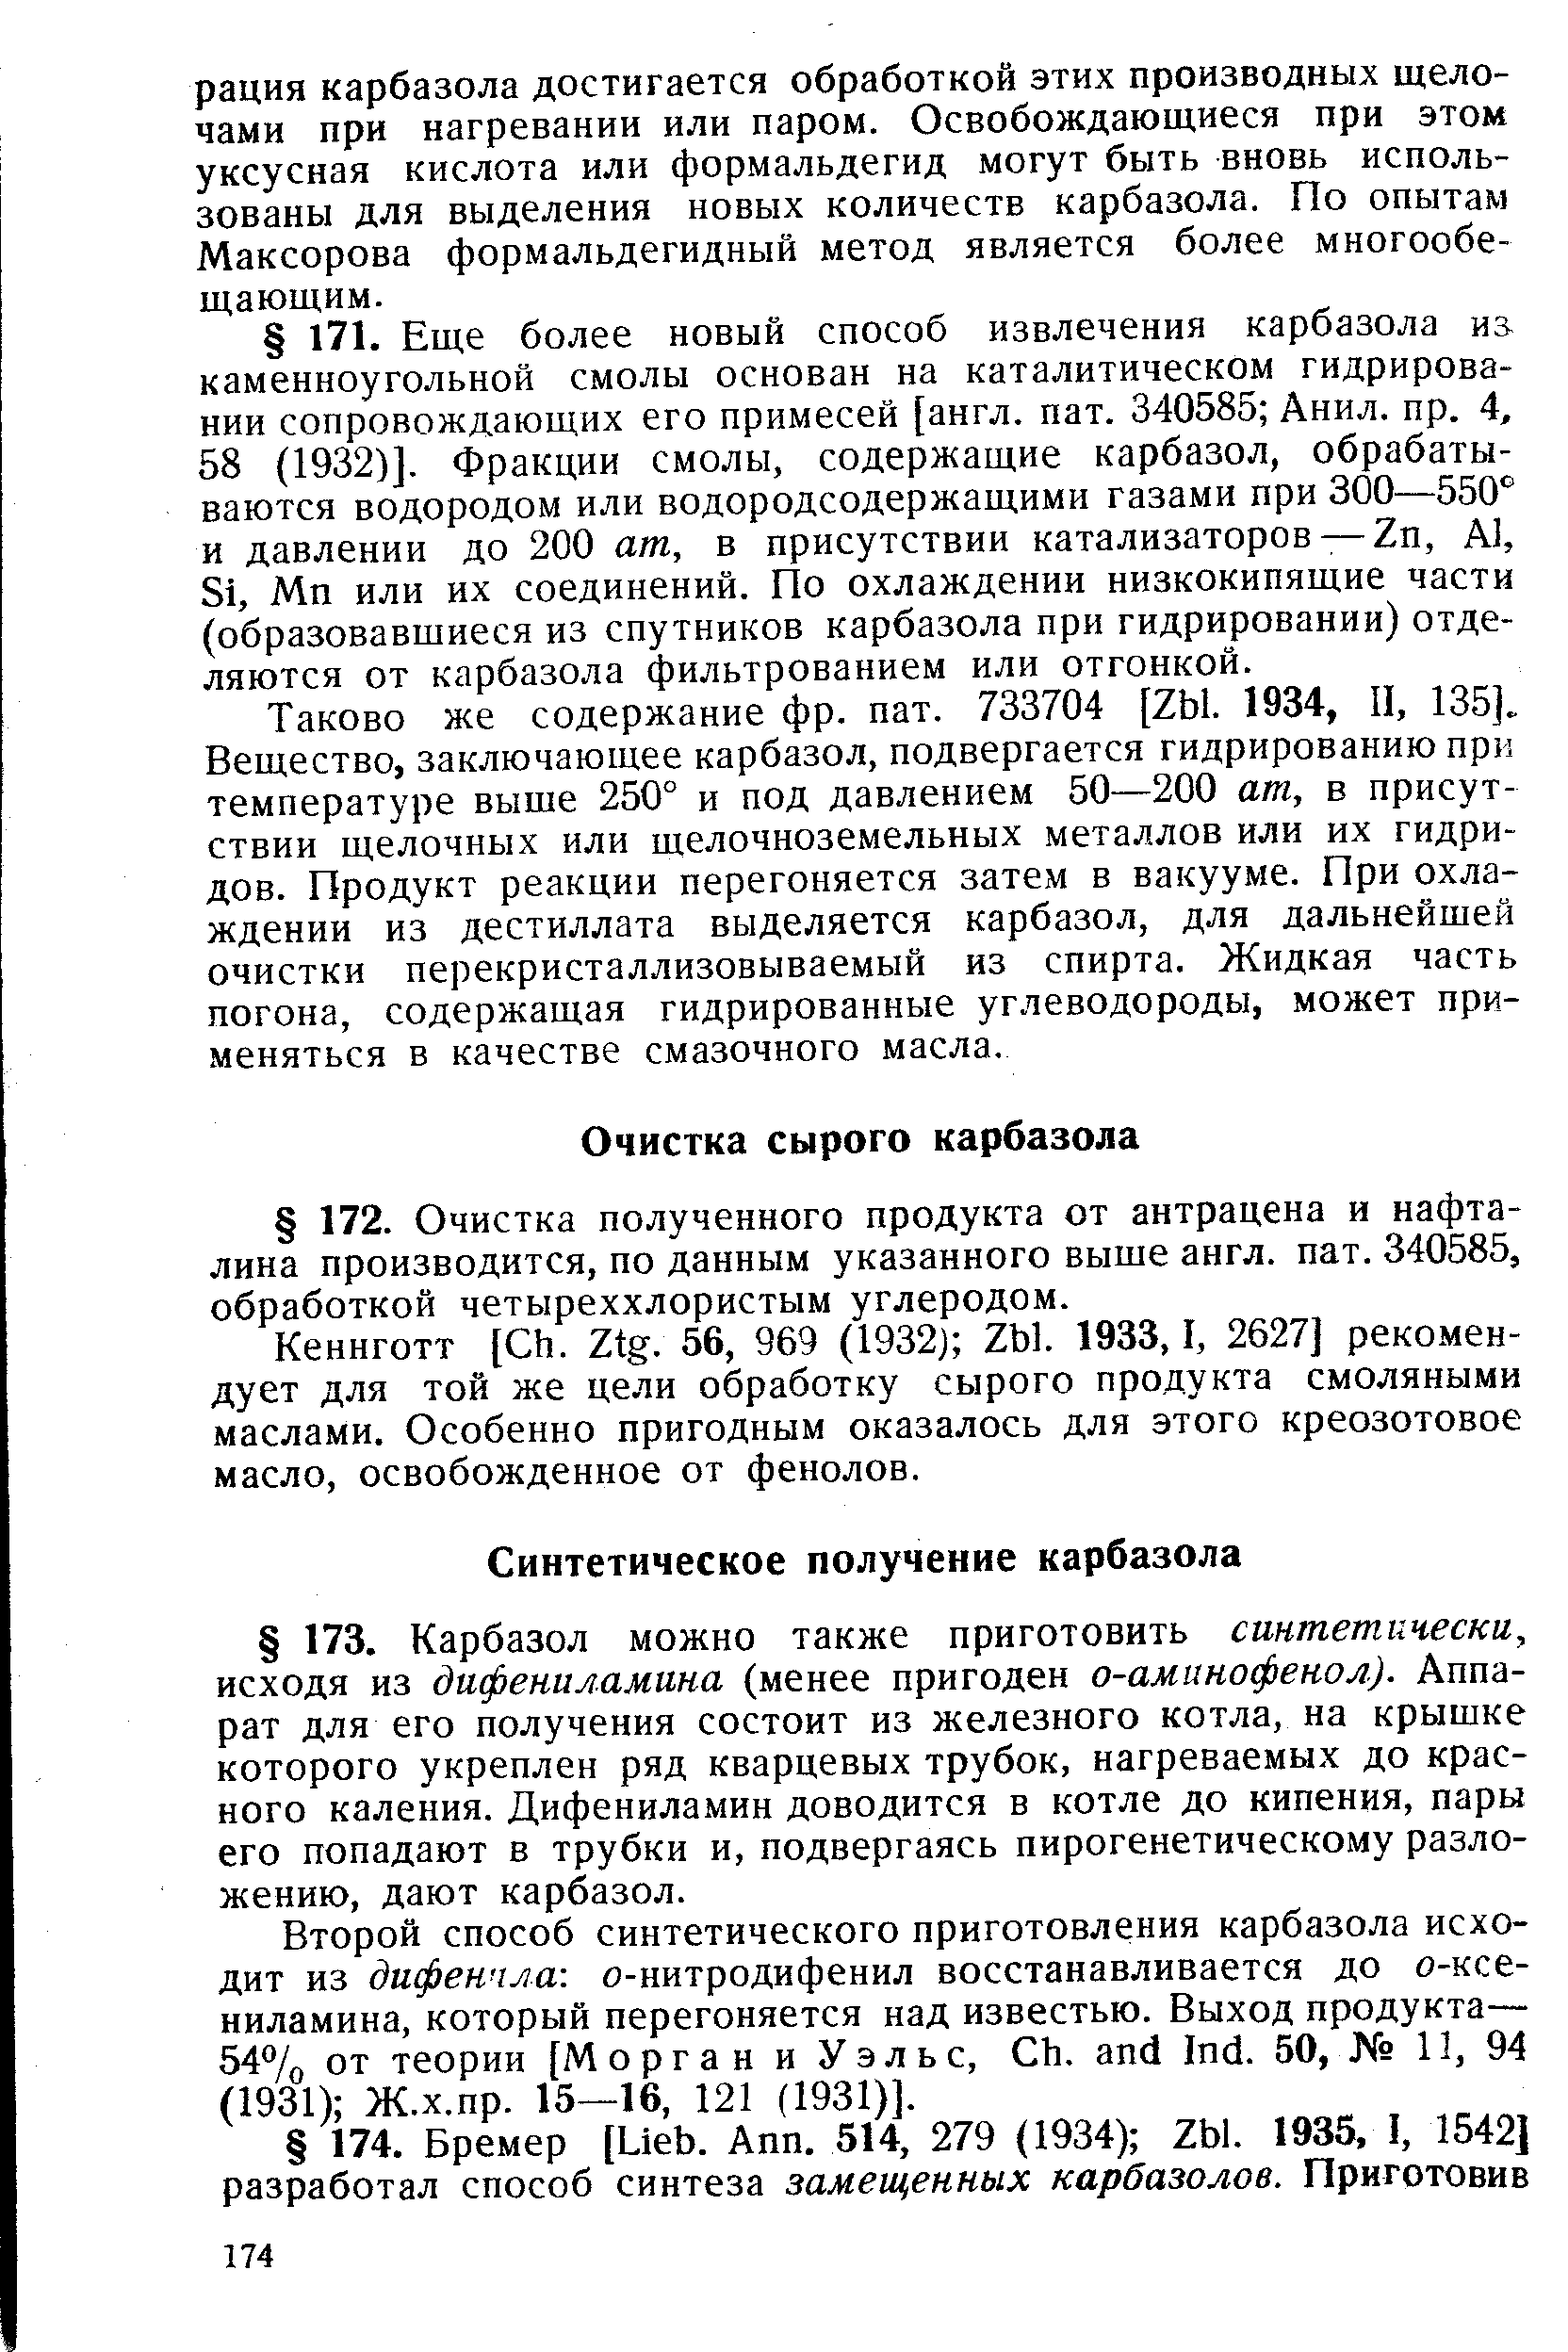 Кеннготт [ h. Ztg. 56, 969 (1932j Zbl. 1933,1, 2627] рекомендует для той же цели обработку сырого продукта смоляными маслами. Особенно пригодным оказалось для этого креозотовое масло, освобожденное от фенолов.